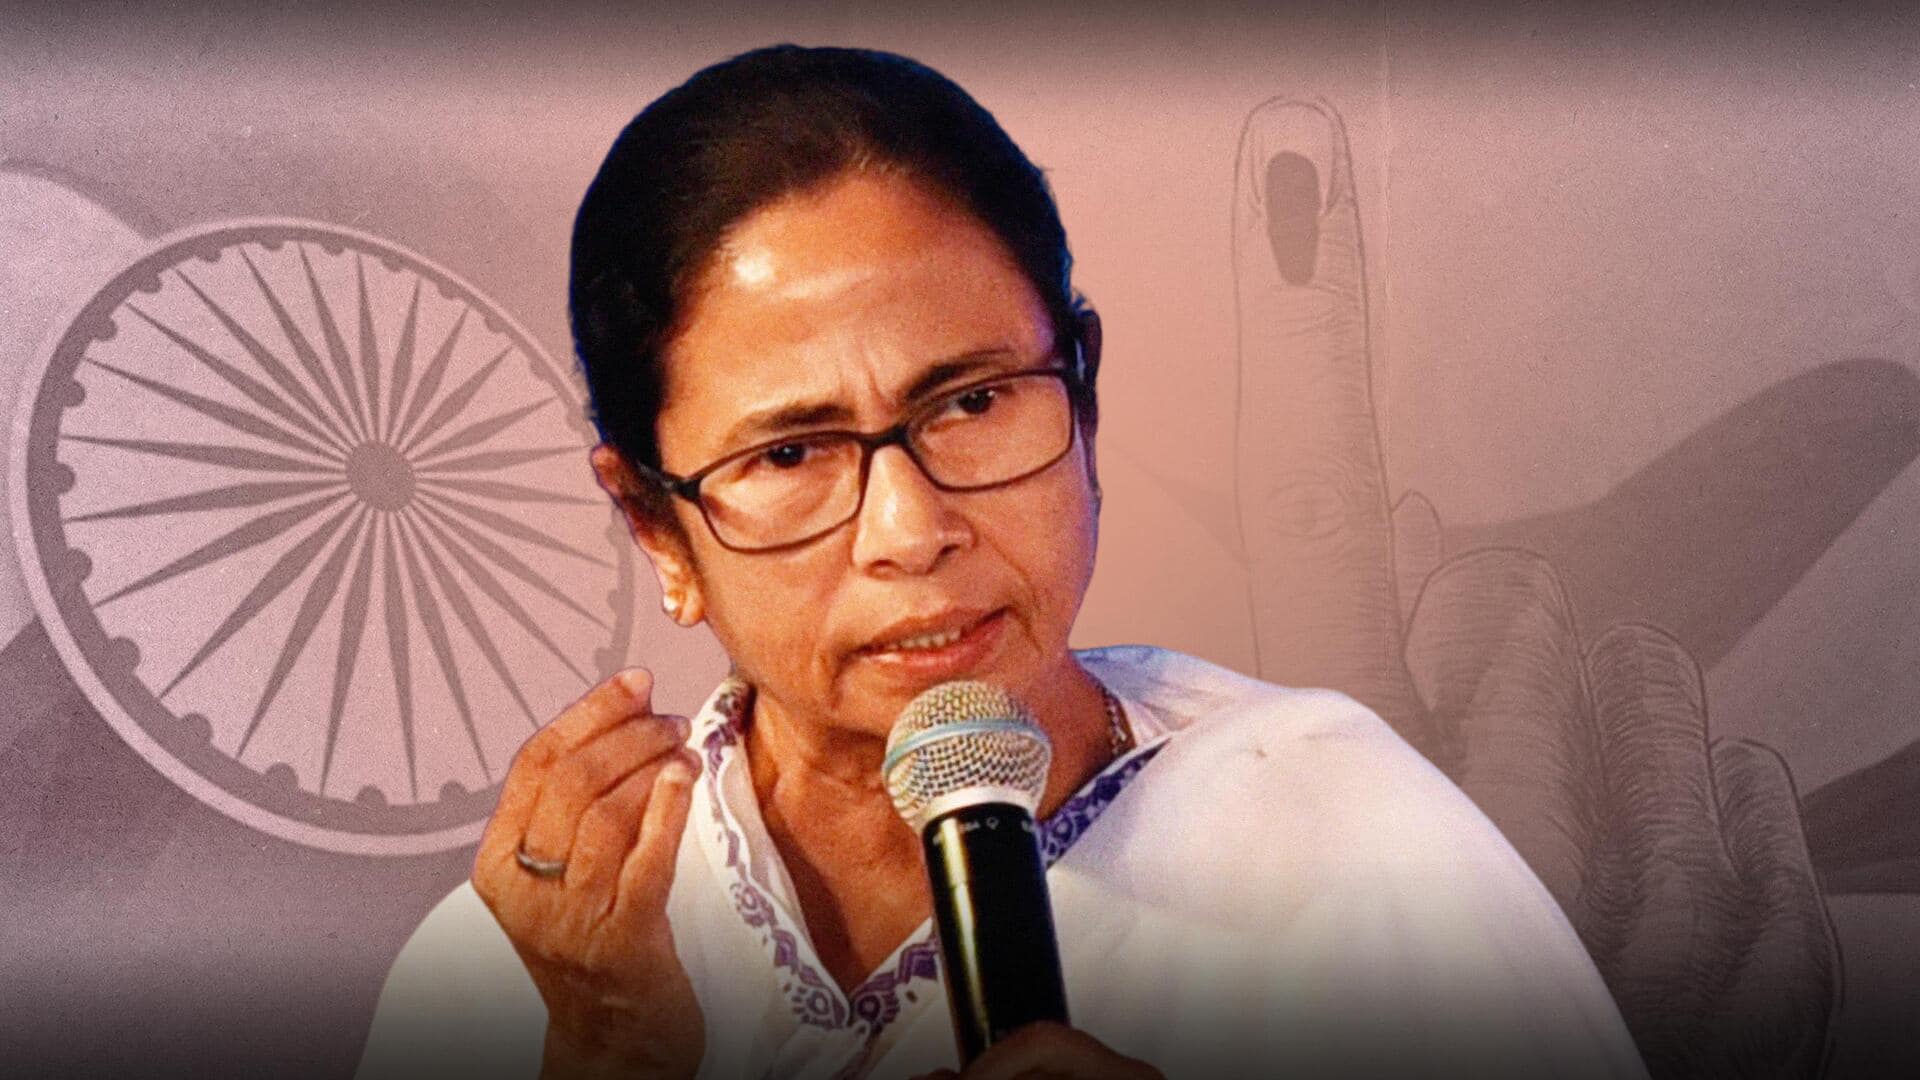 ममता बनर्जी ने किया 'एक देश, एक चुनाव' का विरोध, संविधान और लोकतंत्र के खिलाफ बताया